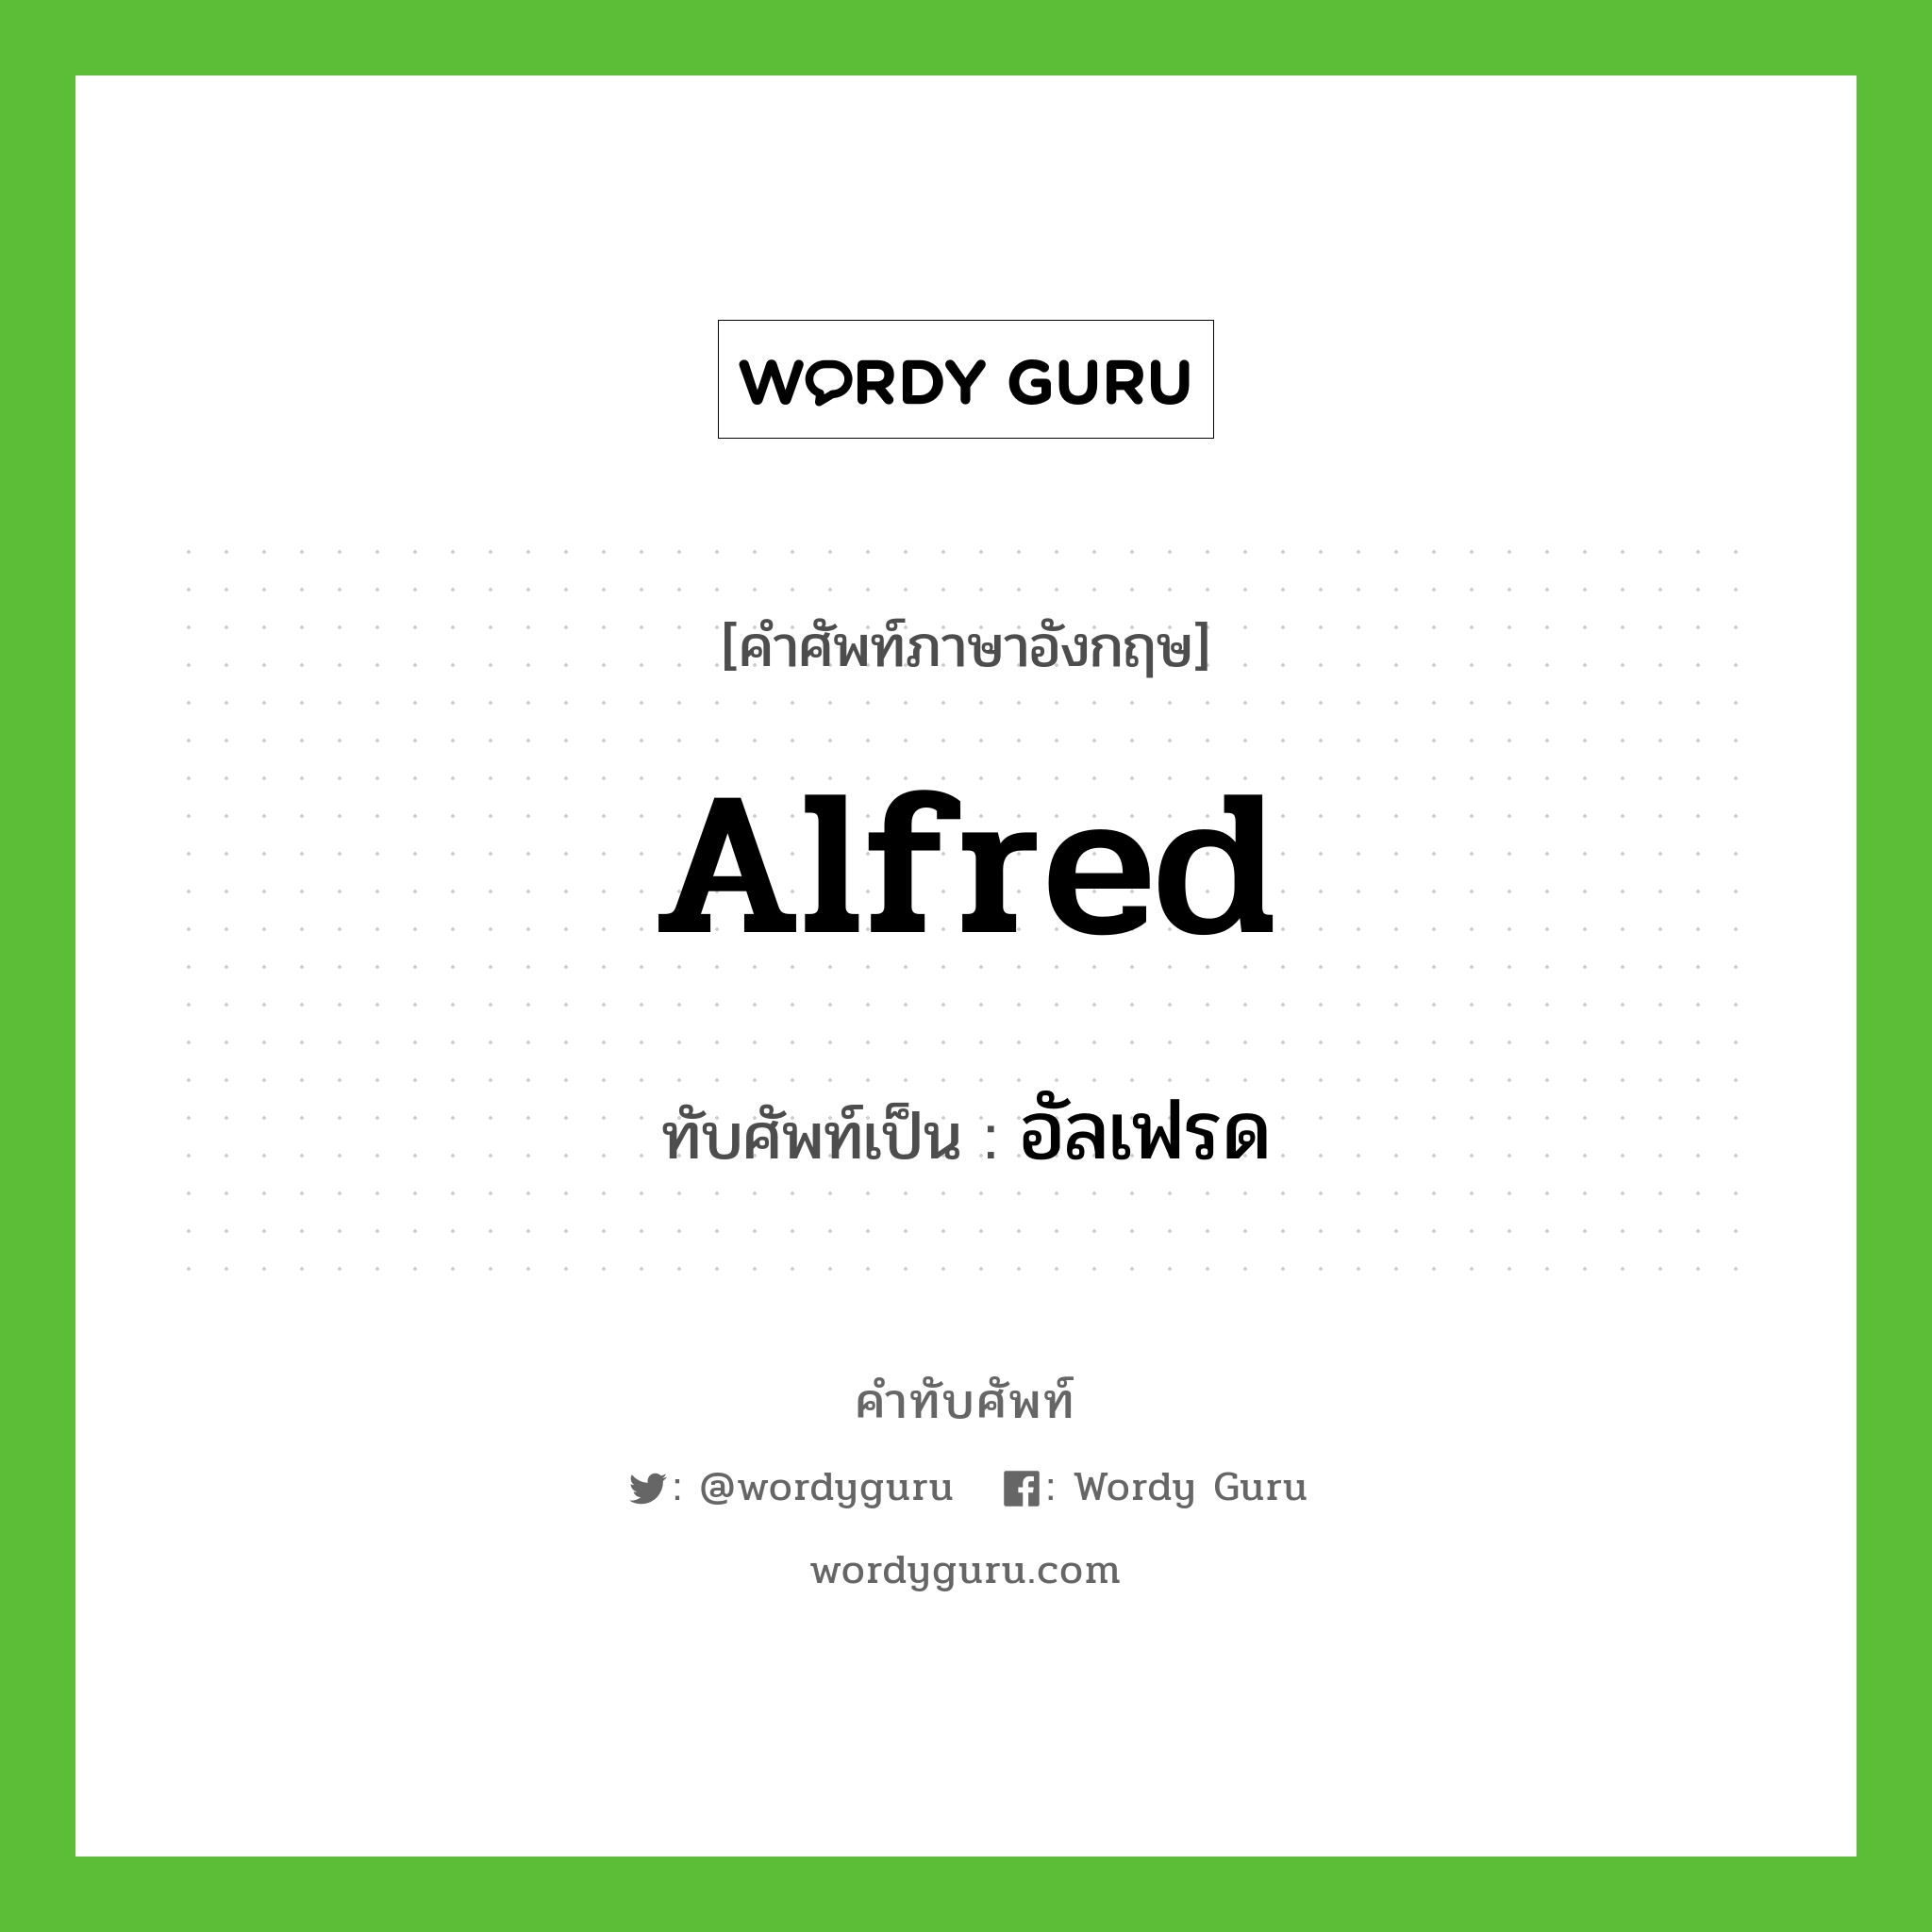 Alfred เขียนเป็นคำไทยว่าอะไร?, คำศัพท์ภาษาอังกฤษ Alfred ทับศัพท์เป็น อัลเฟรด